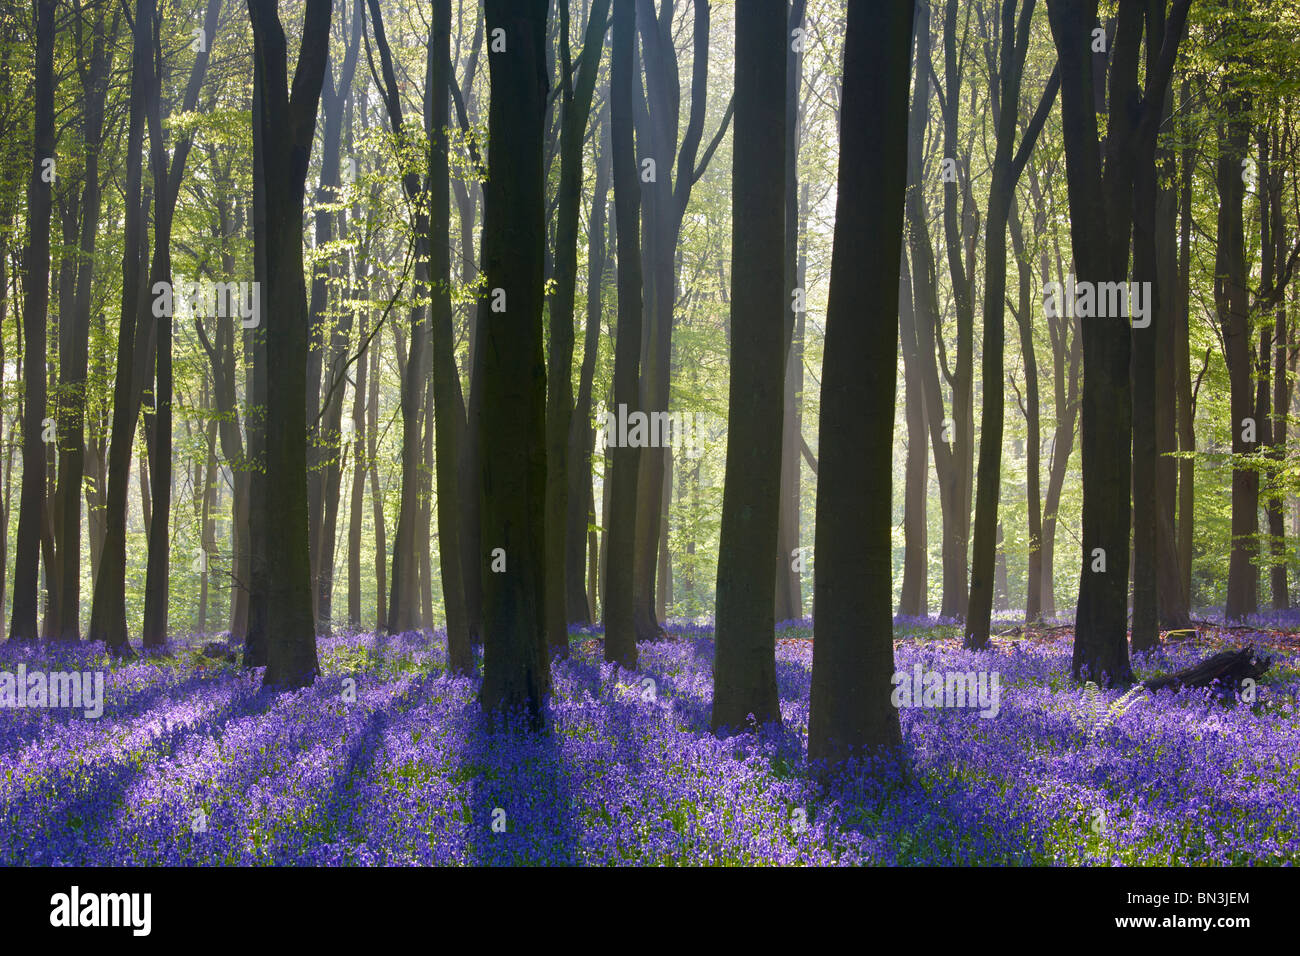 Transmisión de la luz solar a través de los árboles durante la primavera destacando una alfombra de campanillas en el piso del bosque Foto de stock